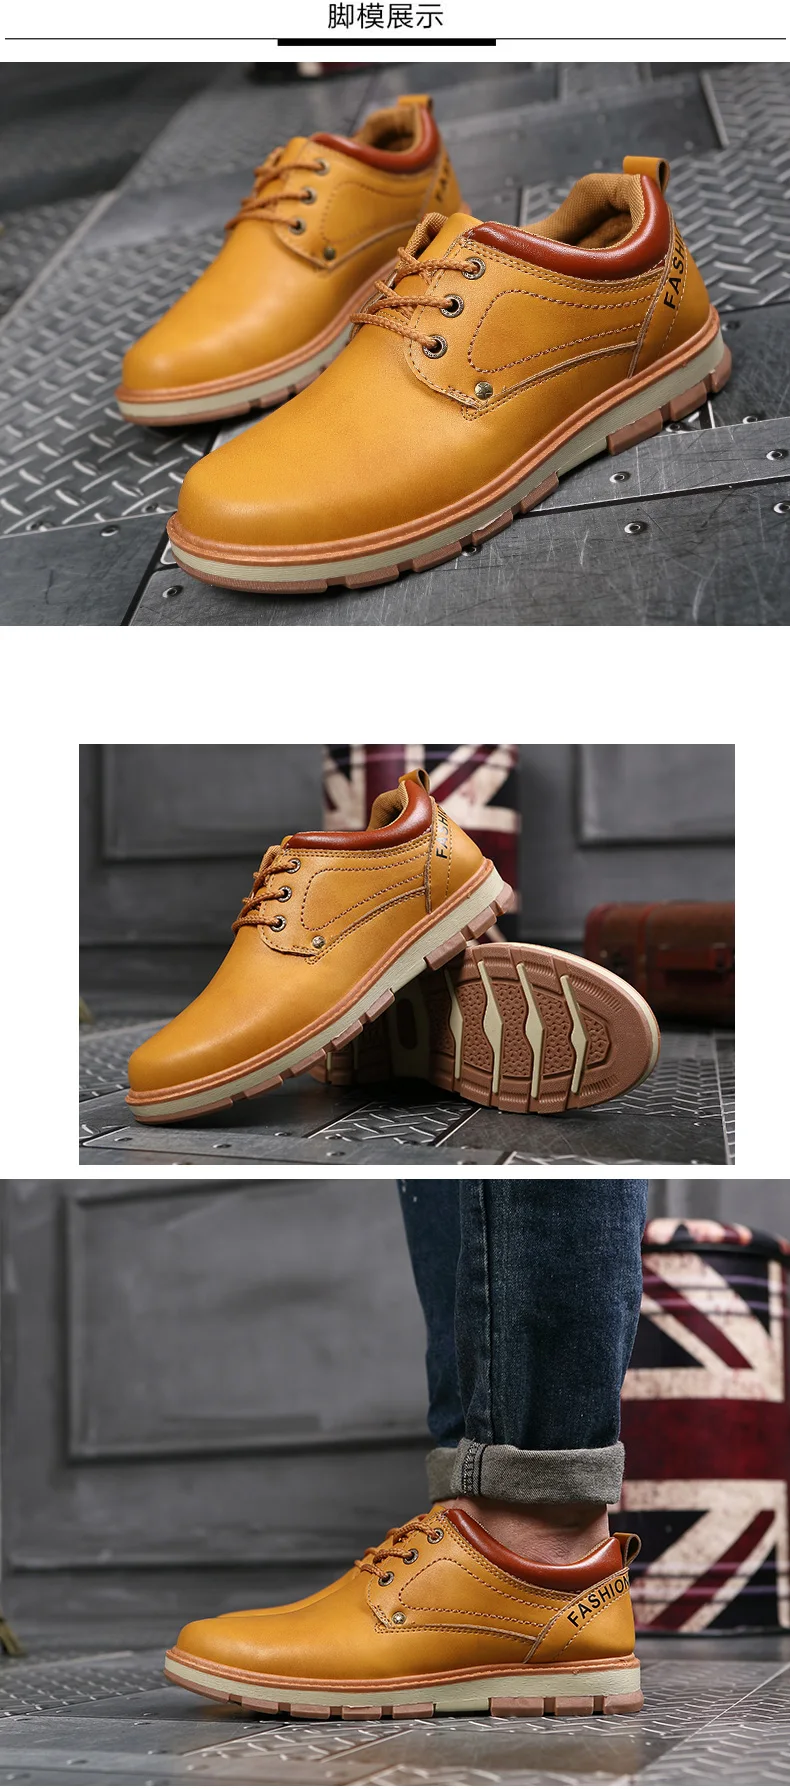 ALEADER/нескользящая рабочая обувь; мужские повседневные туфли-оксфорды; модные удобные мужские прогулочные туфли на плоской подошве; кожаная мужская обувь на шнуровке